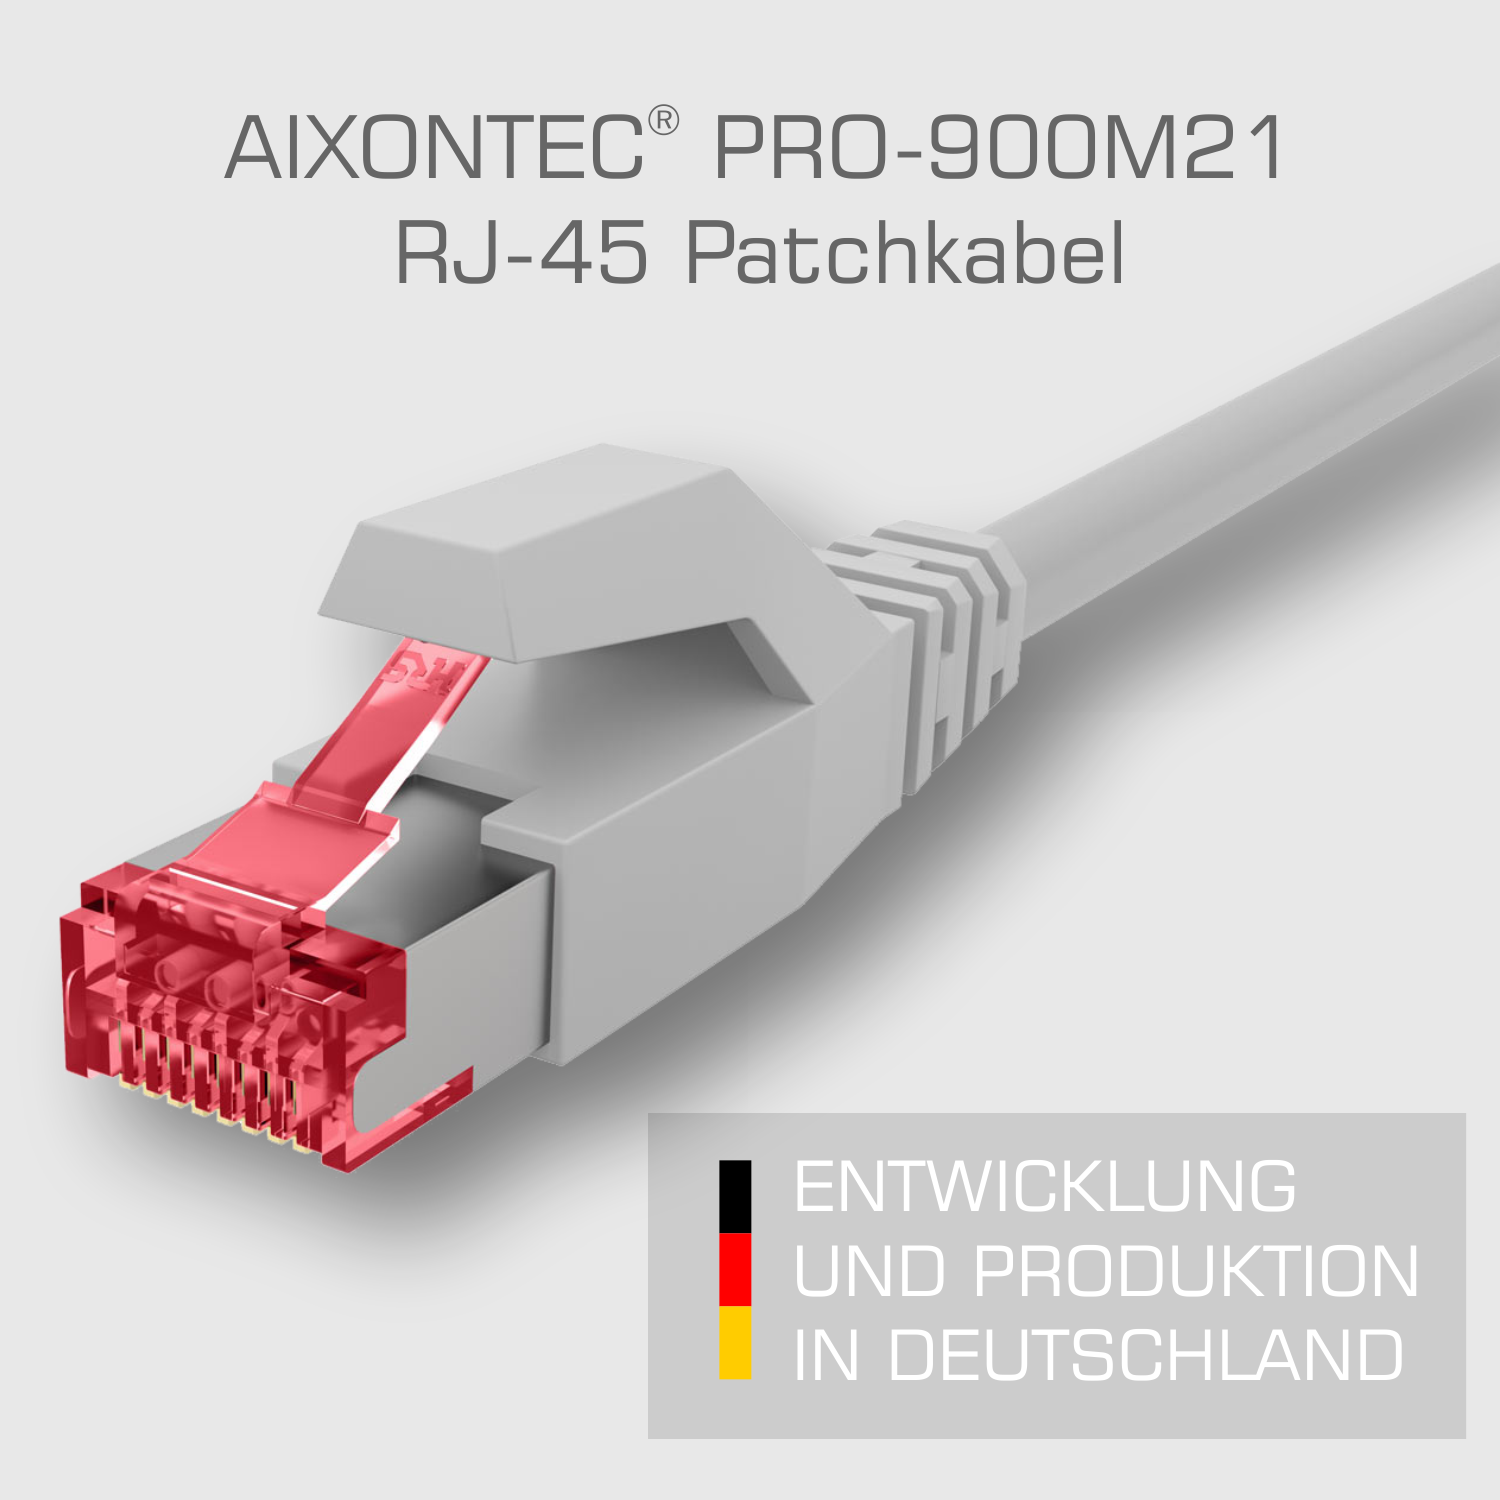 Gigabit, 0,3 m Lankabel Netzwerkkabel, Patchkabel Ethernetkabel 10 Cat.6 RJ45 0,3m AIXONTEC